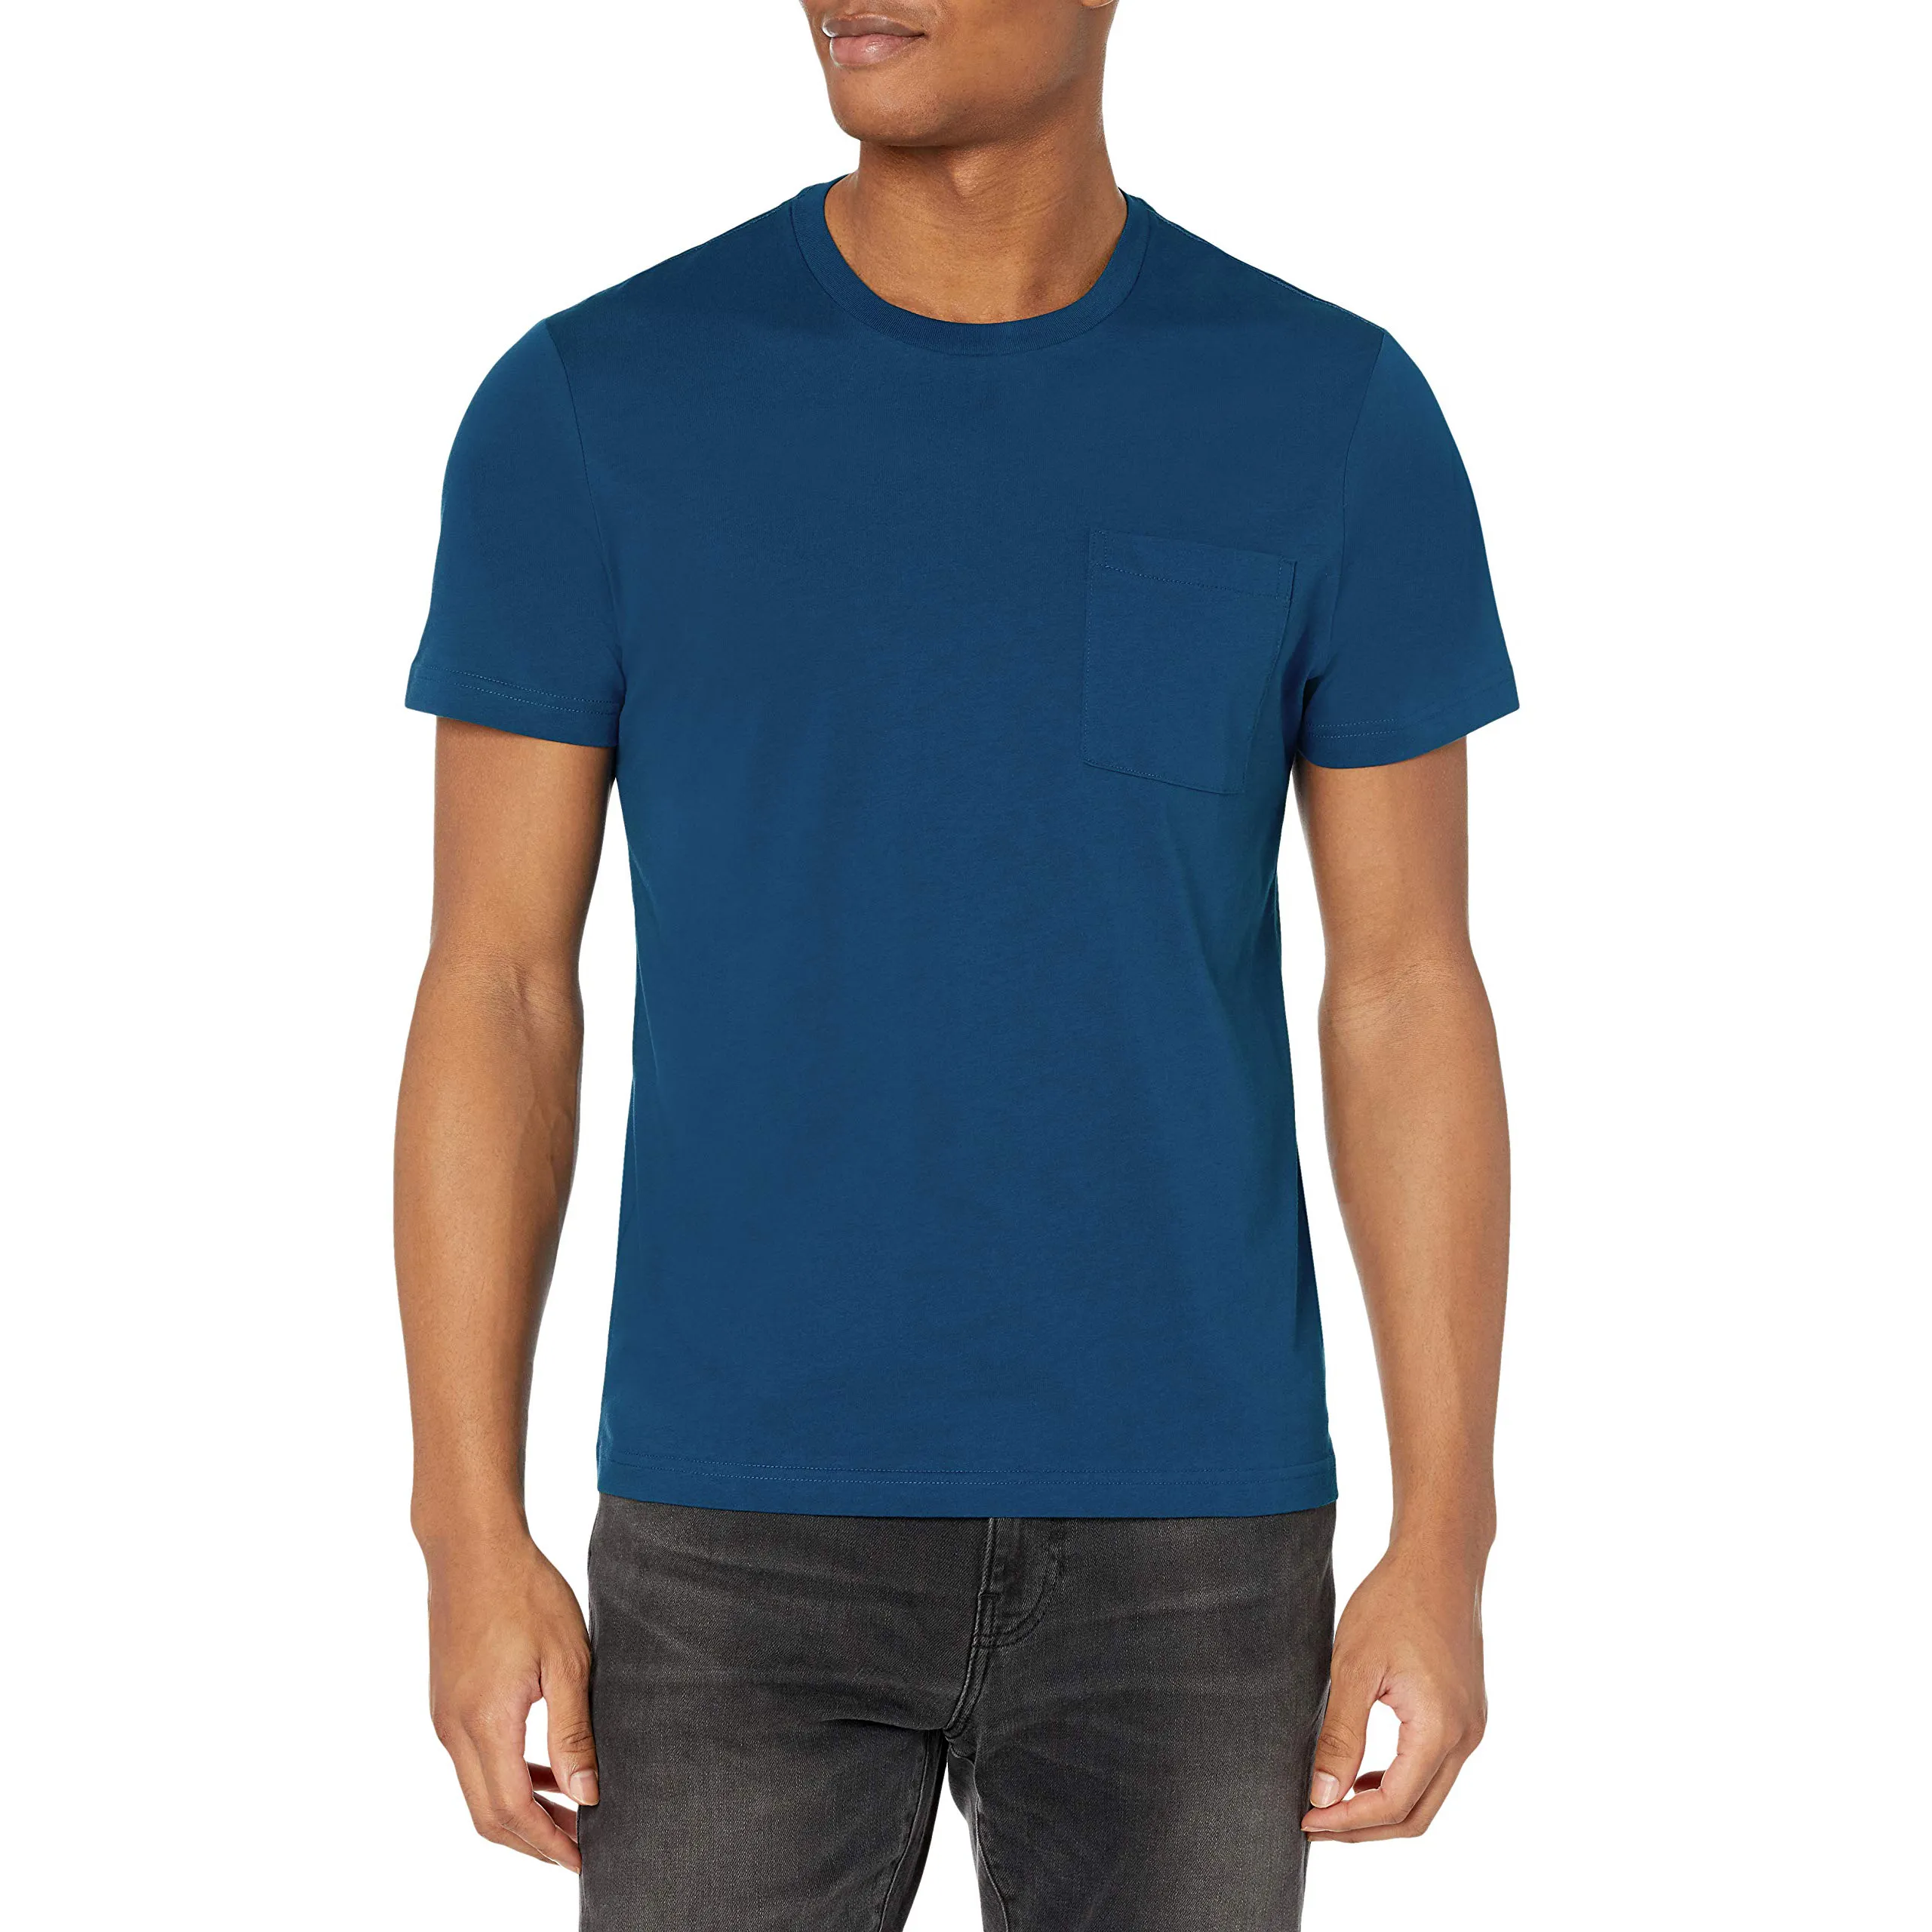 New Summer Style Fashion Color Plain Blank Design T Shirt For Men Latest Model T Shirt Men Custom T shirt For Men